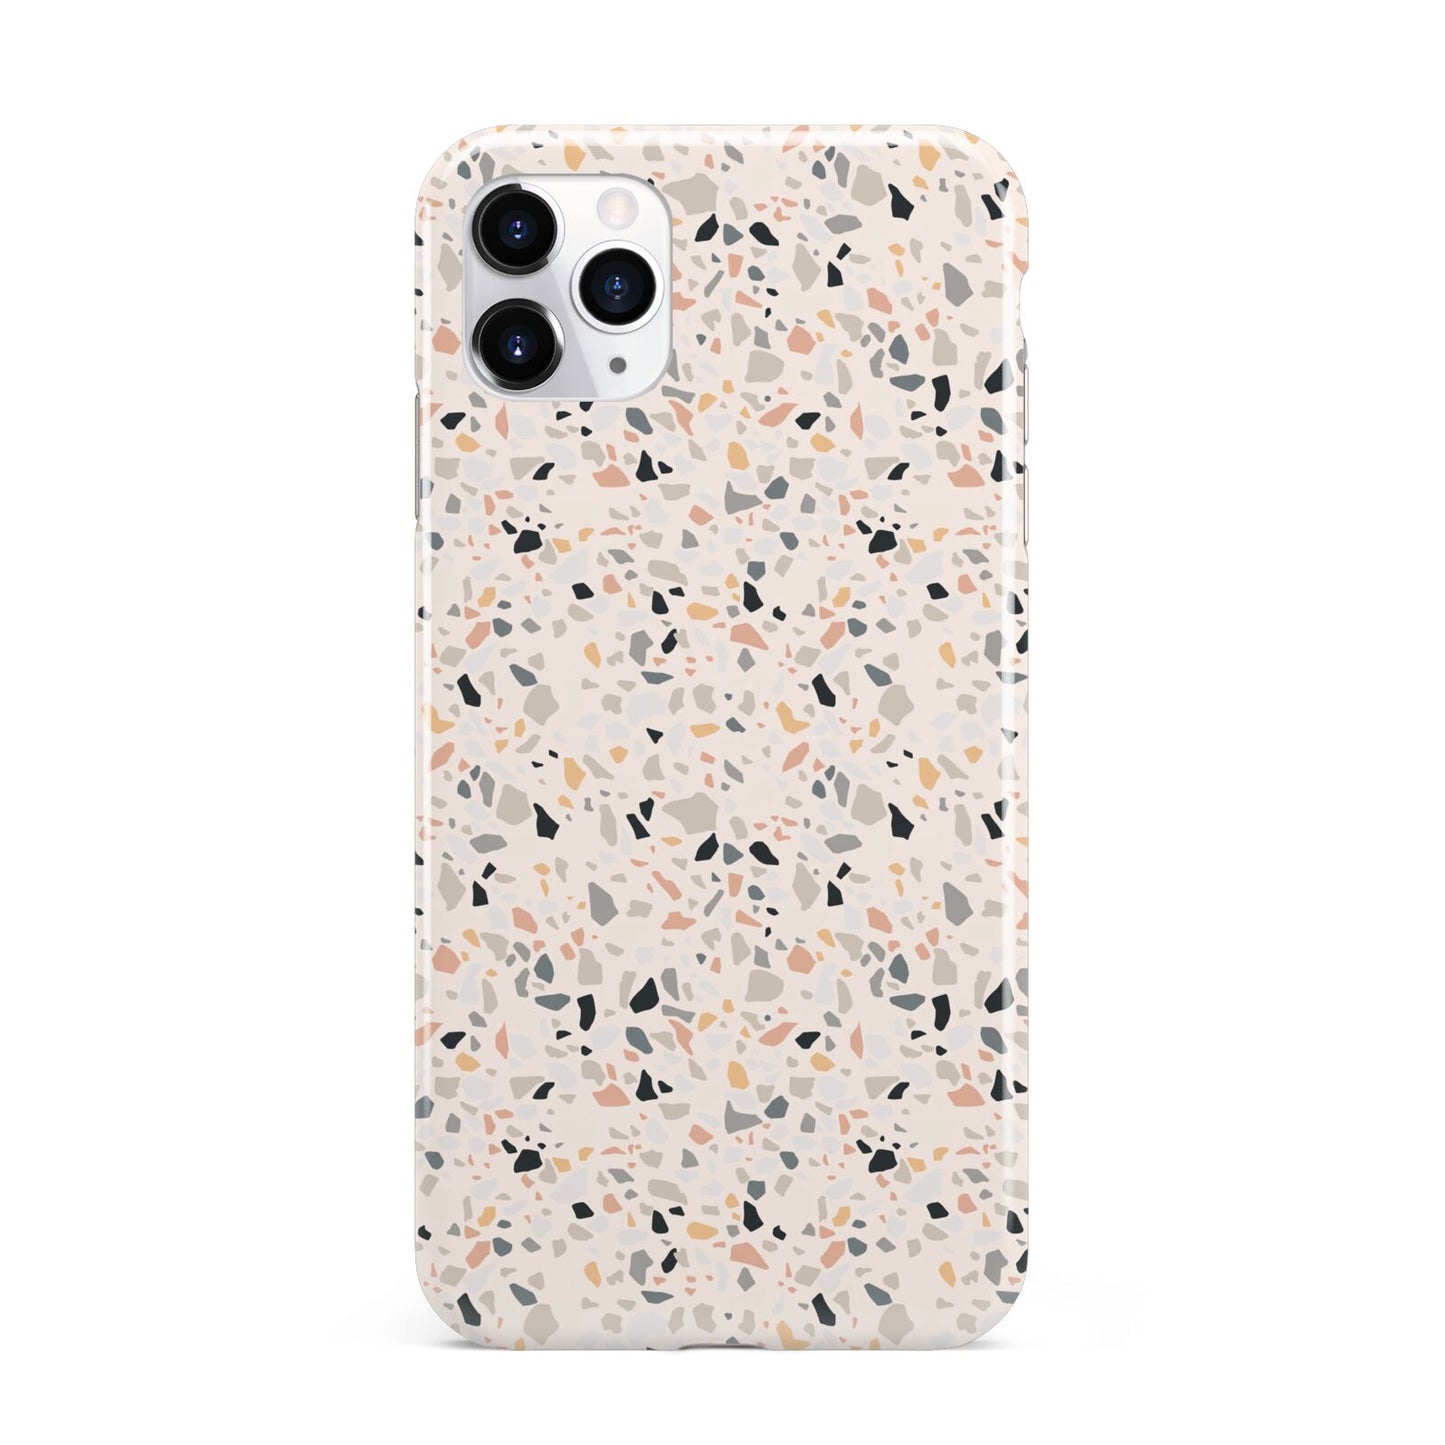 Terrazzo Stone iPhone 11 Pro Max 3D Tough Case